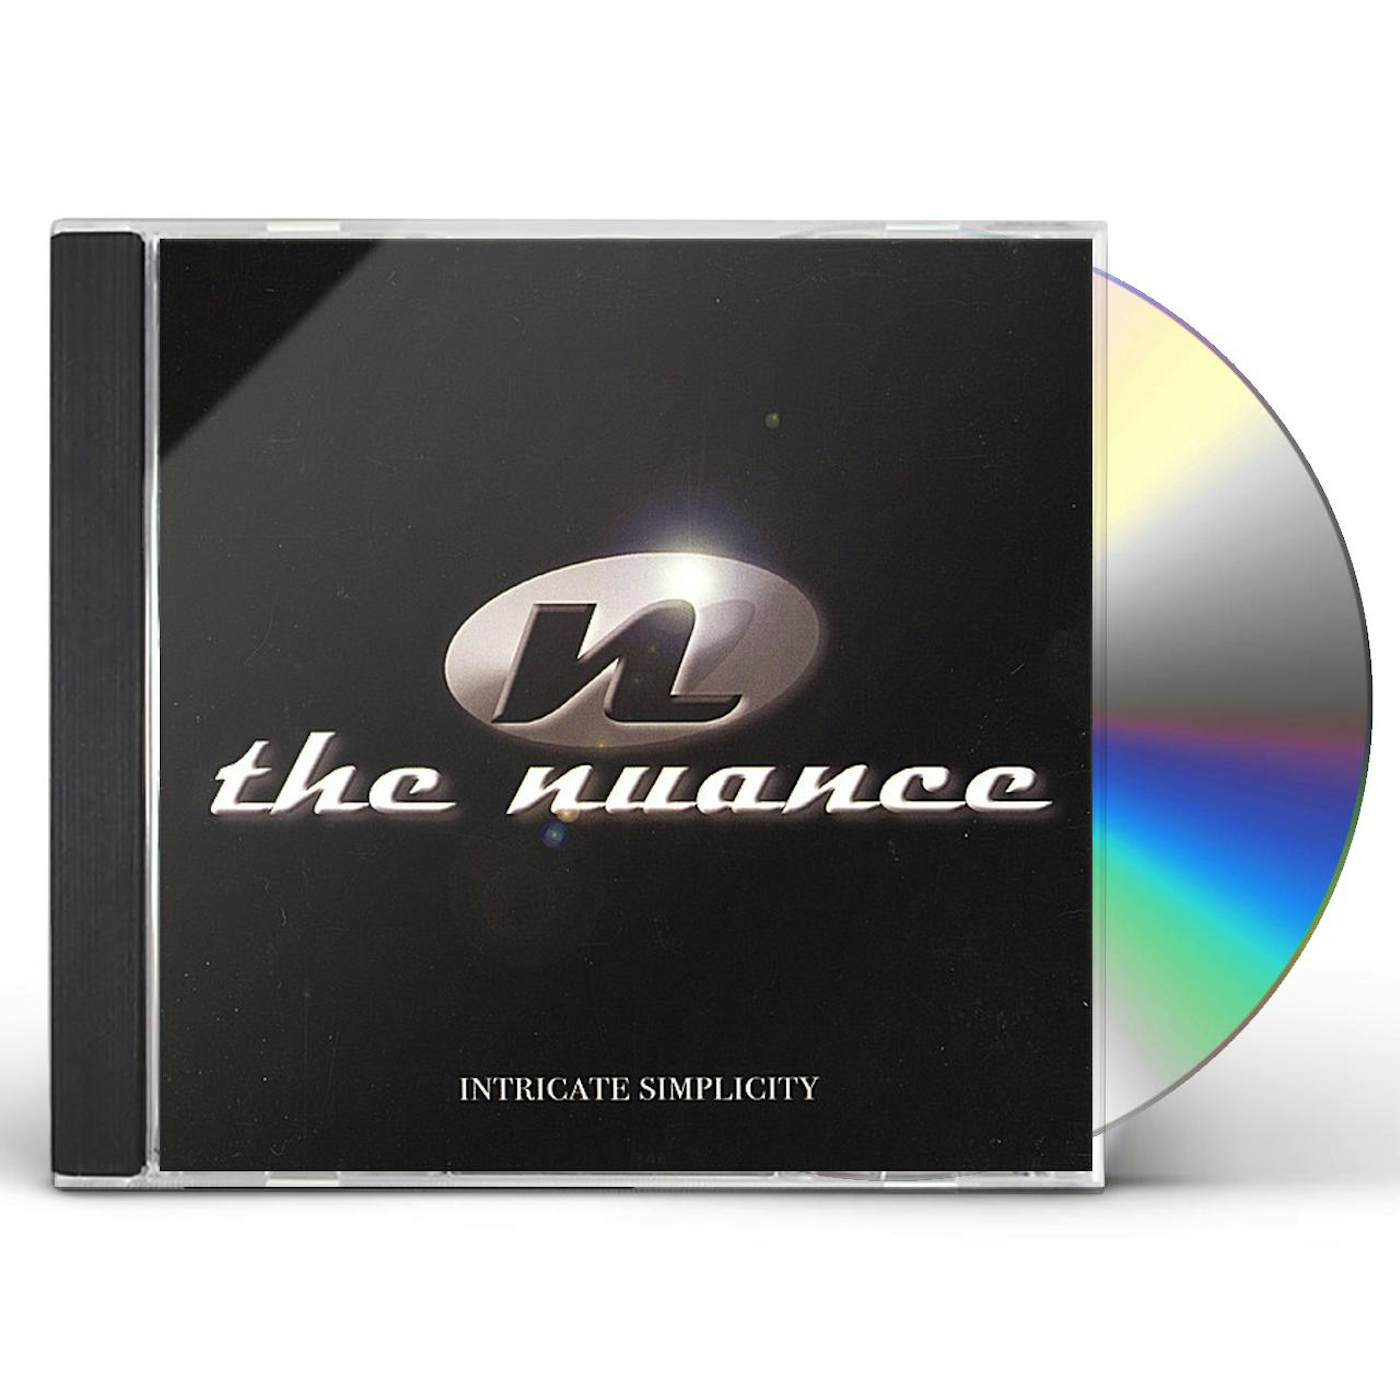 Nuance INTRICATE SIMPLICITY CD